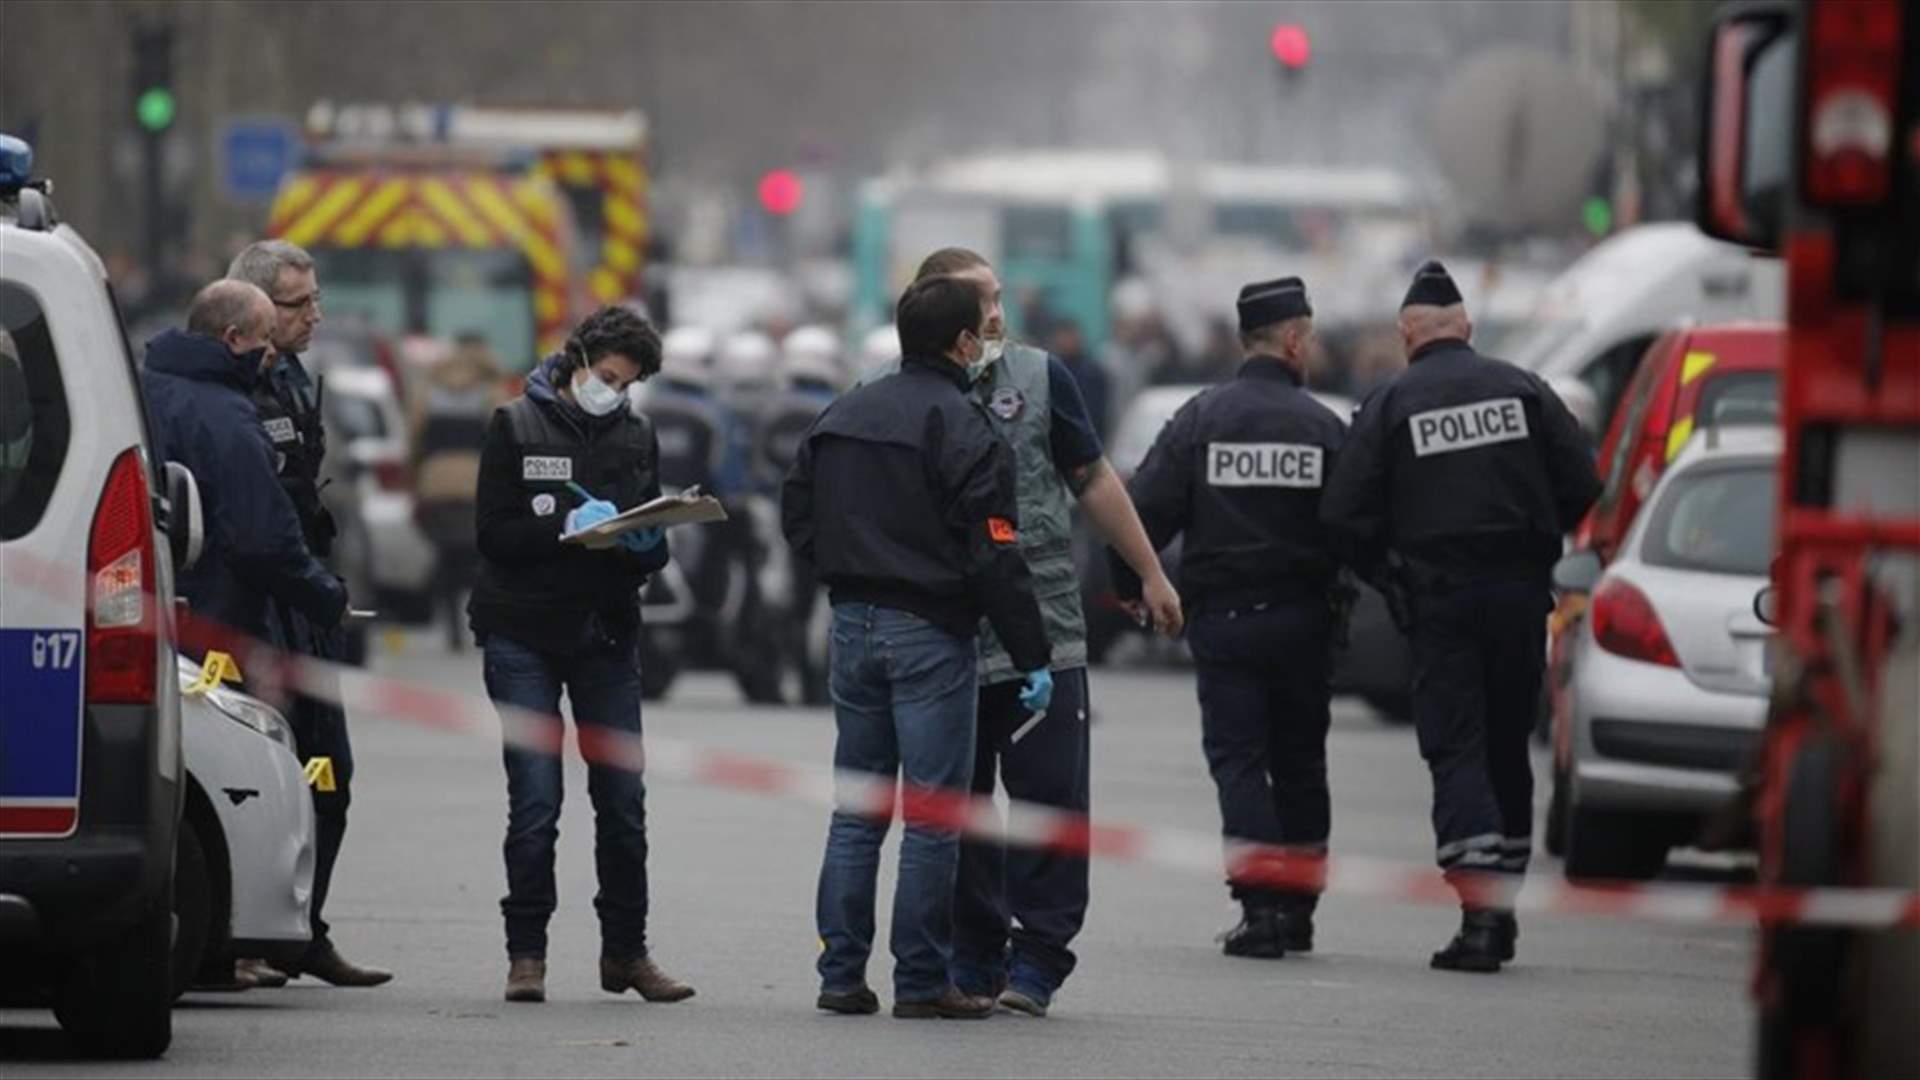 محققون فرنسيون يشتبهون بان بلجيكيا-مغربيا نسق هجمات باريس وبروكسل من سوريا